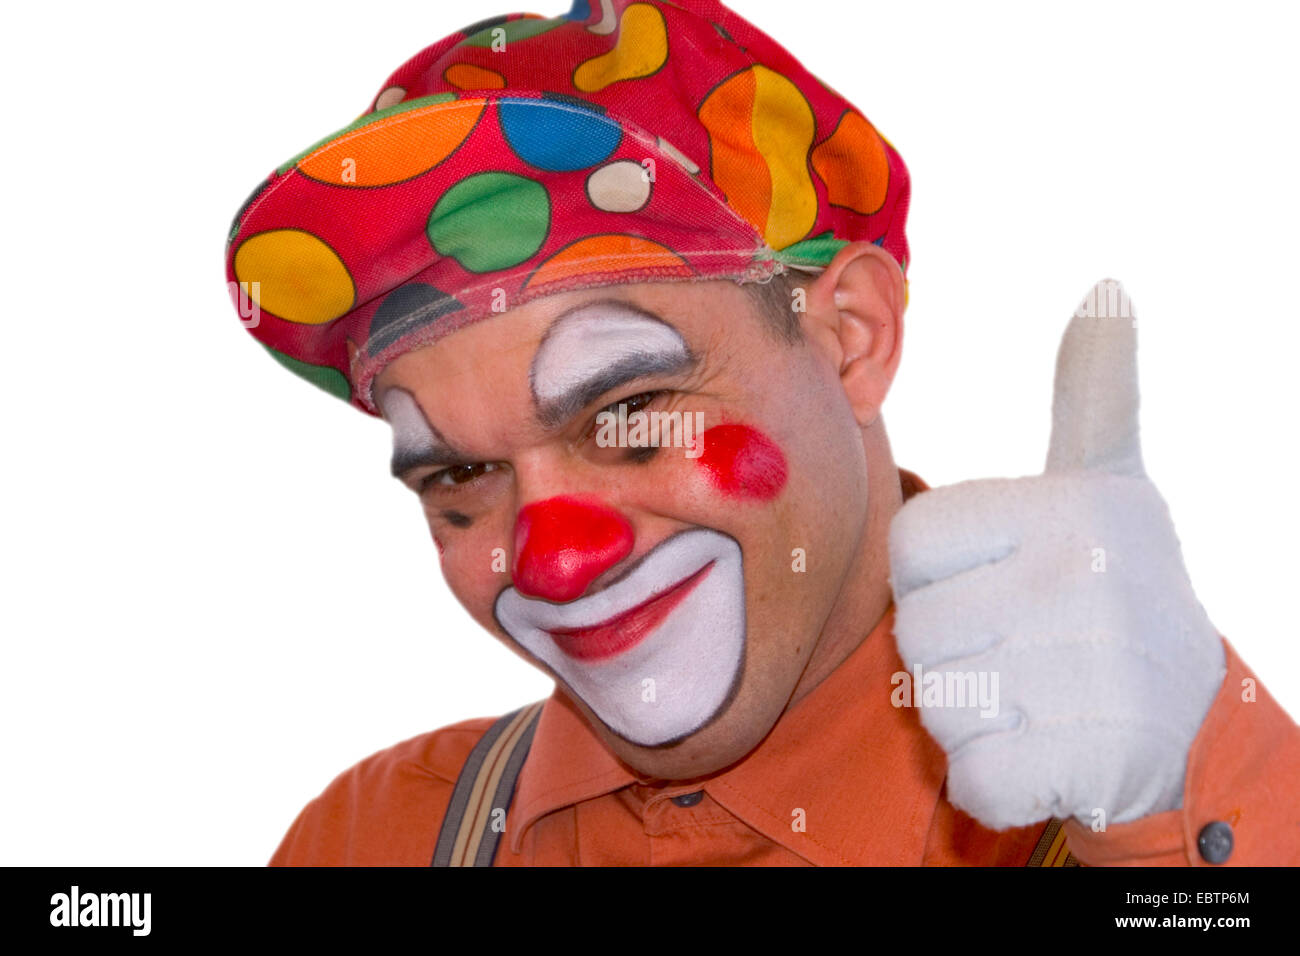 Clown make up immagini e fotografie stock ad alta risoluzione - Alamy